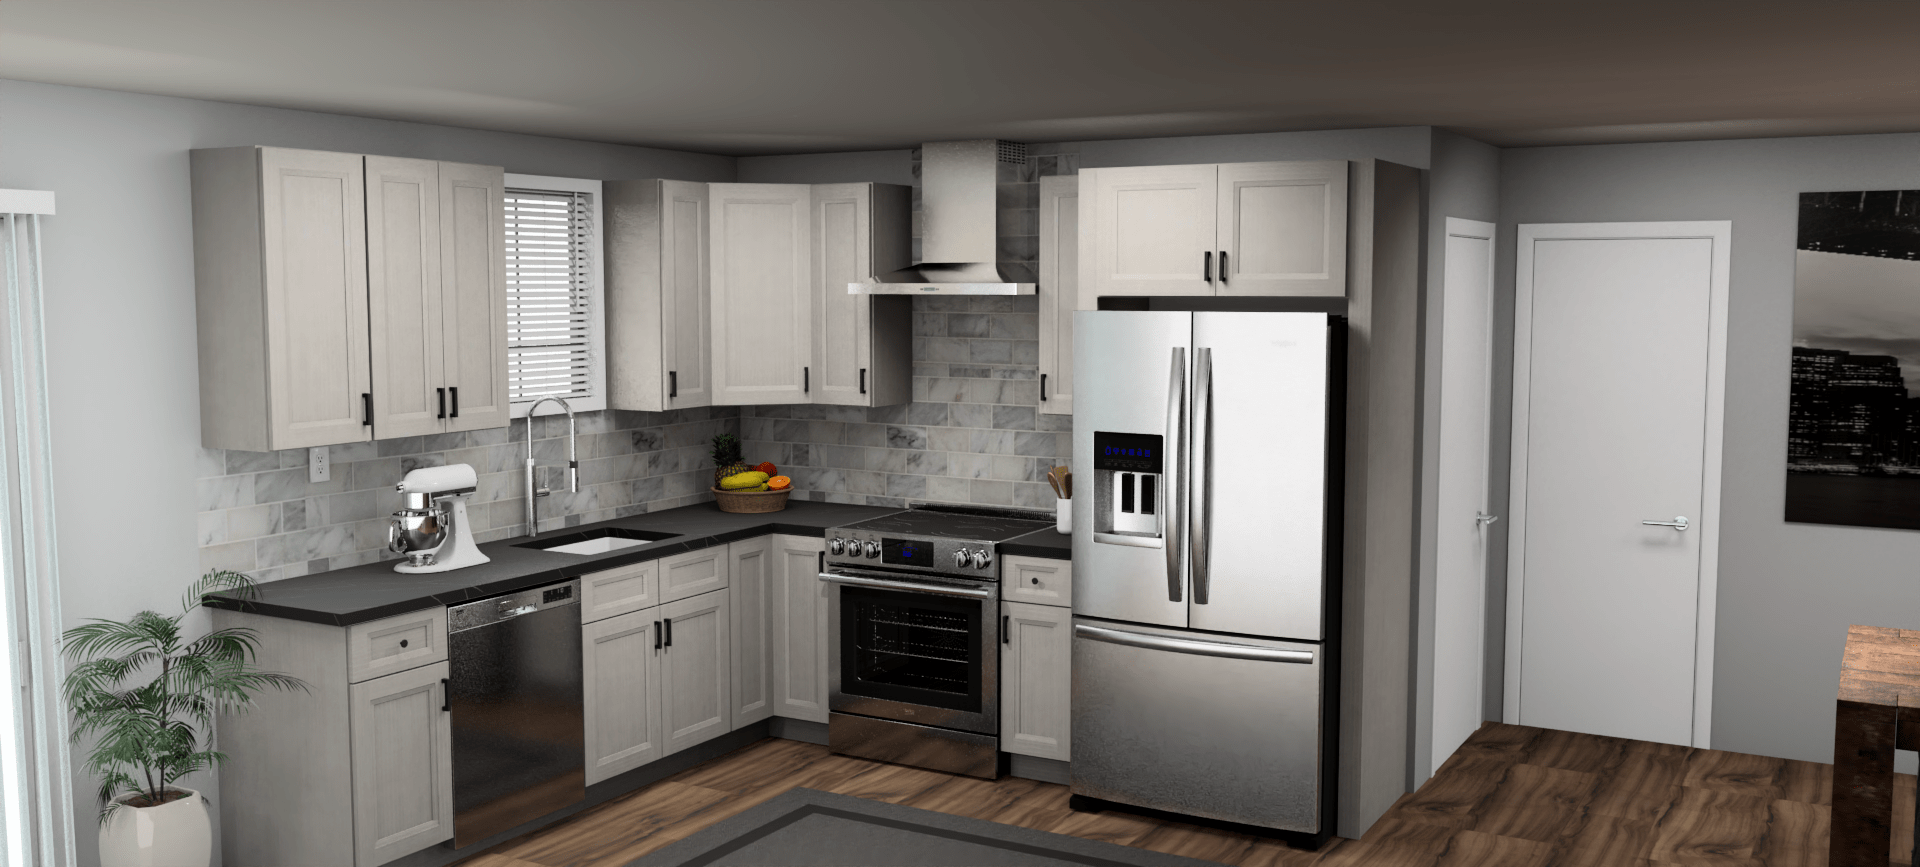 Fabuwood Allure Onyx Horizon 9 x 10 L Shaped Kitchen Main Layout Photo